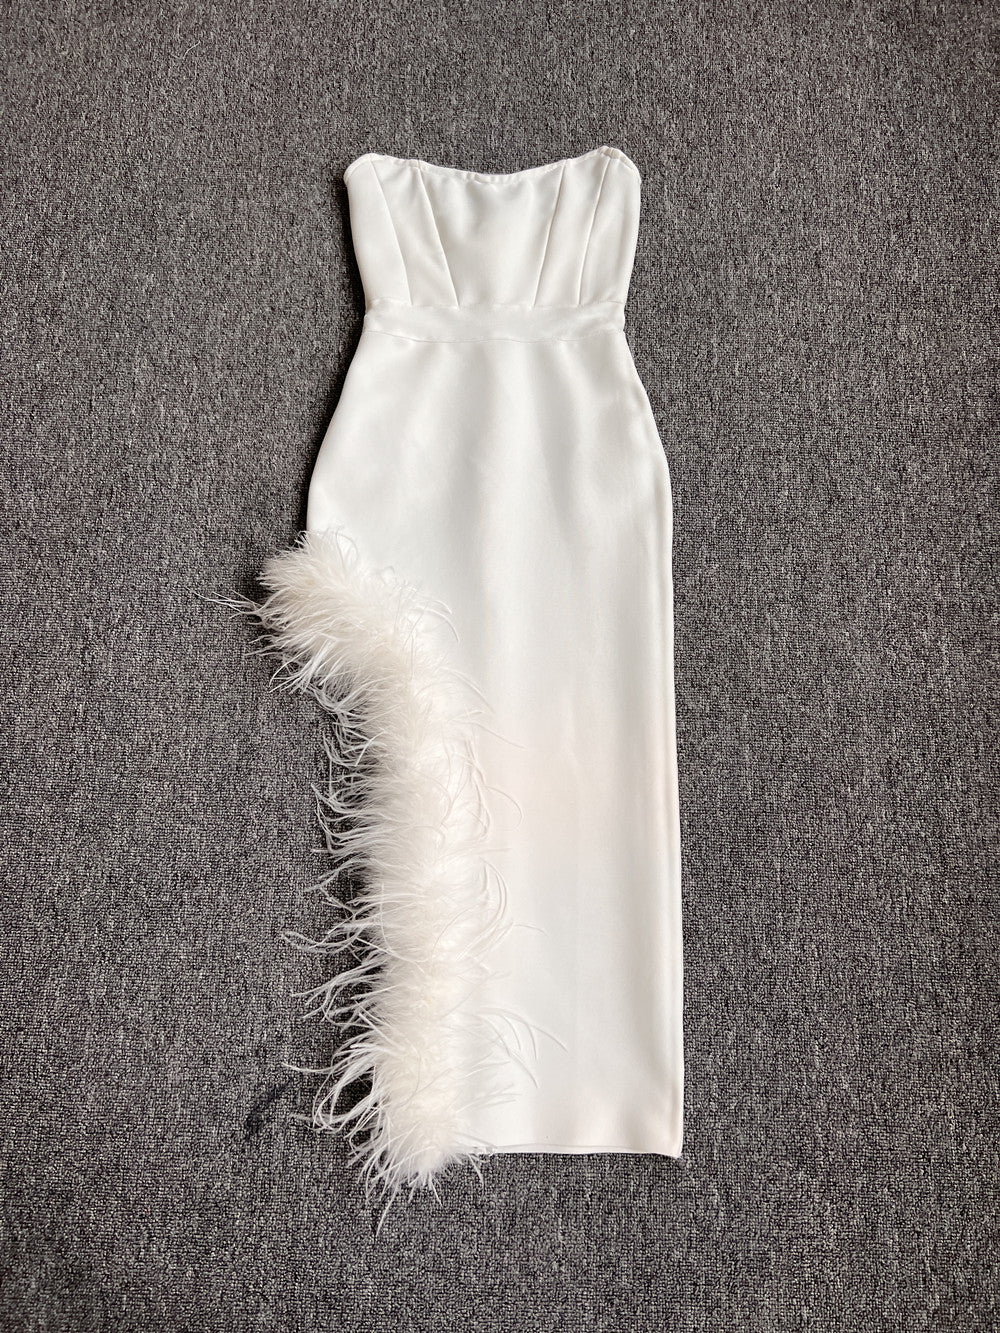 SARA Strapless Feathers Bandage Dress